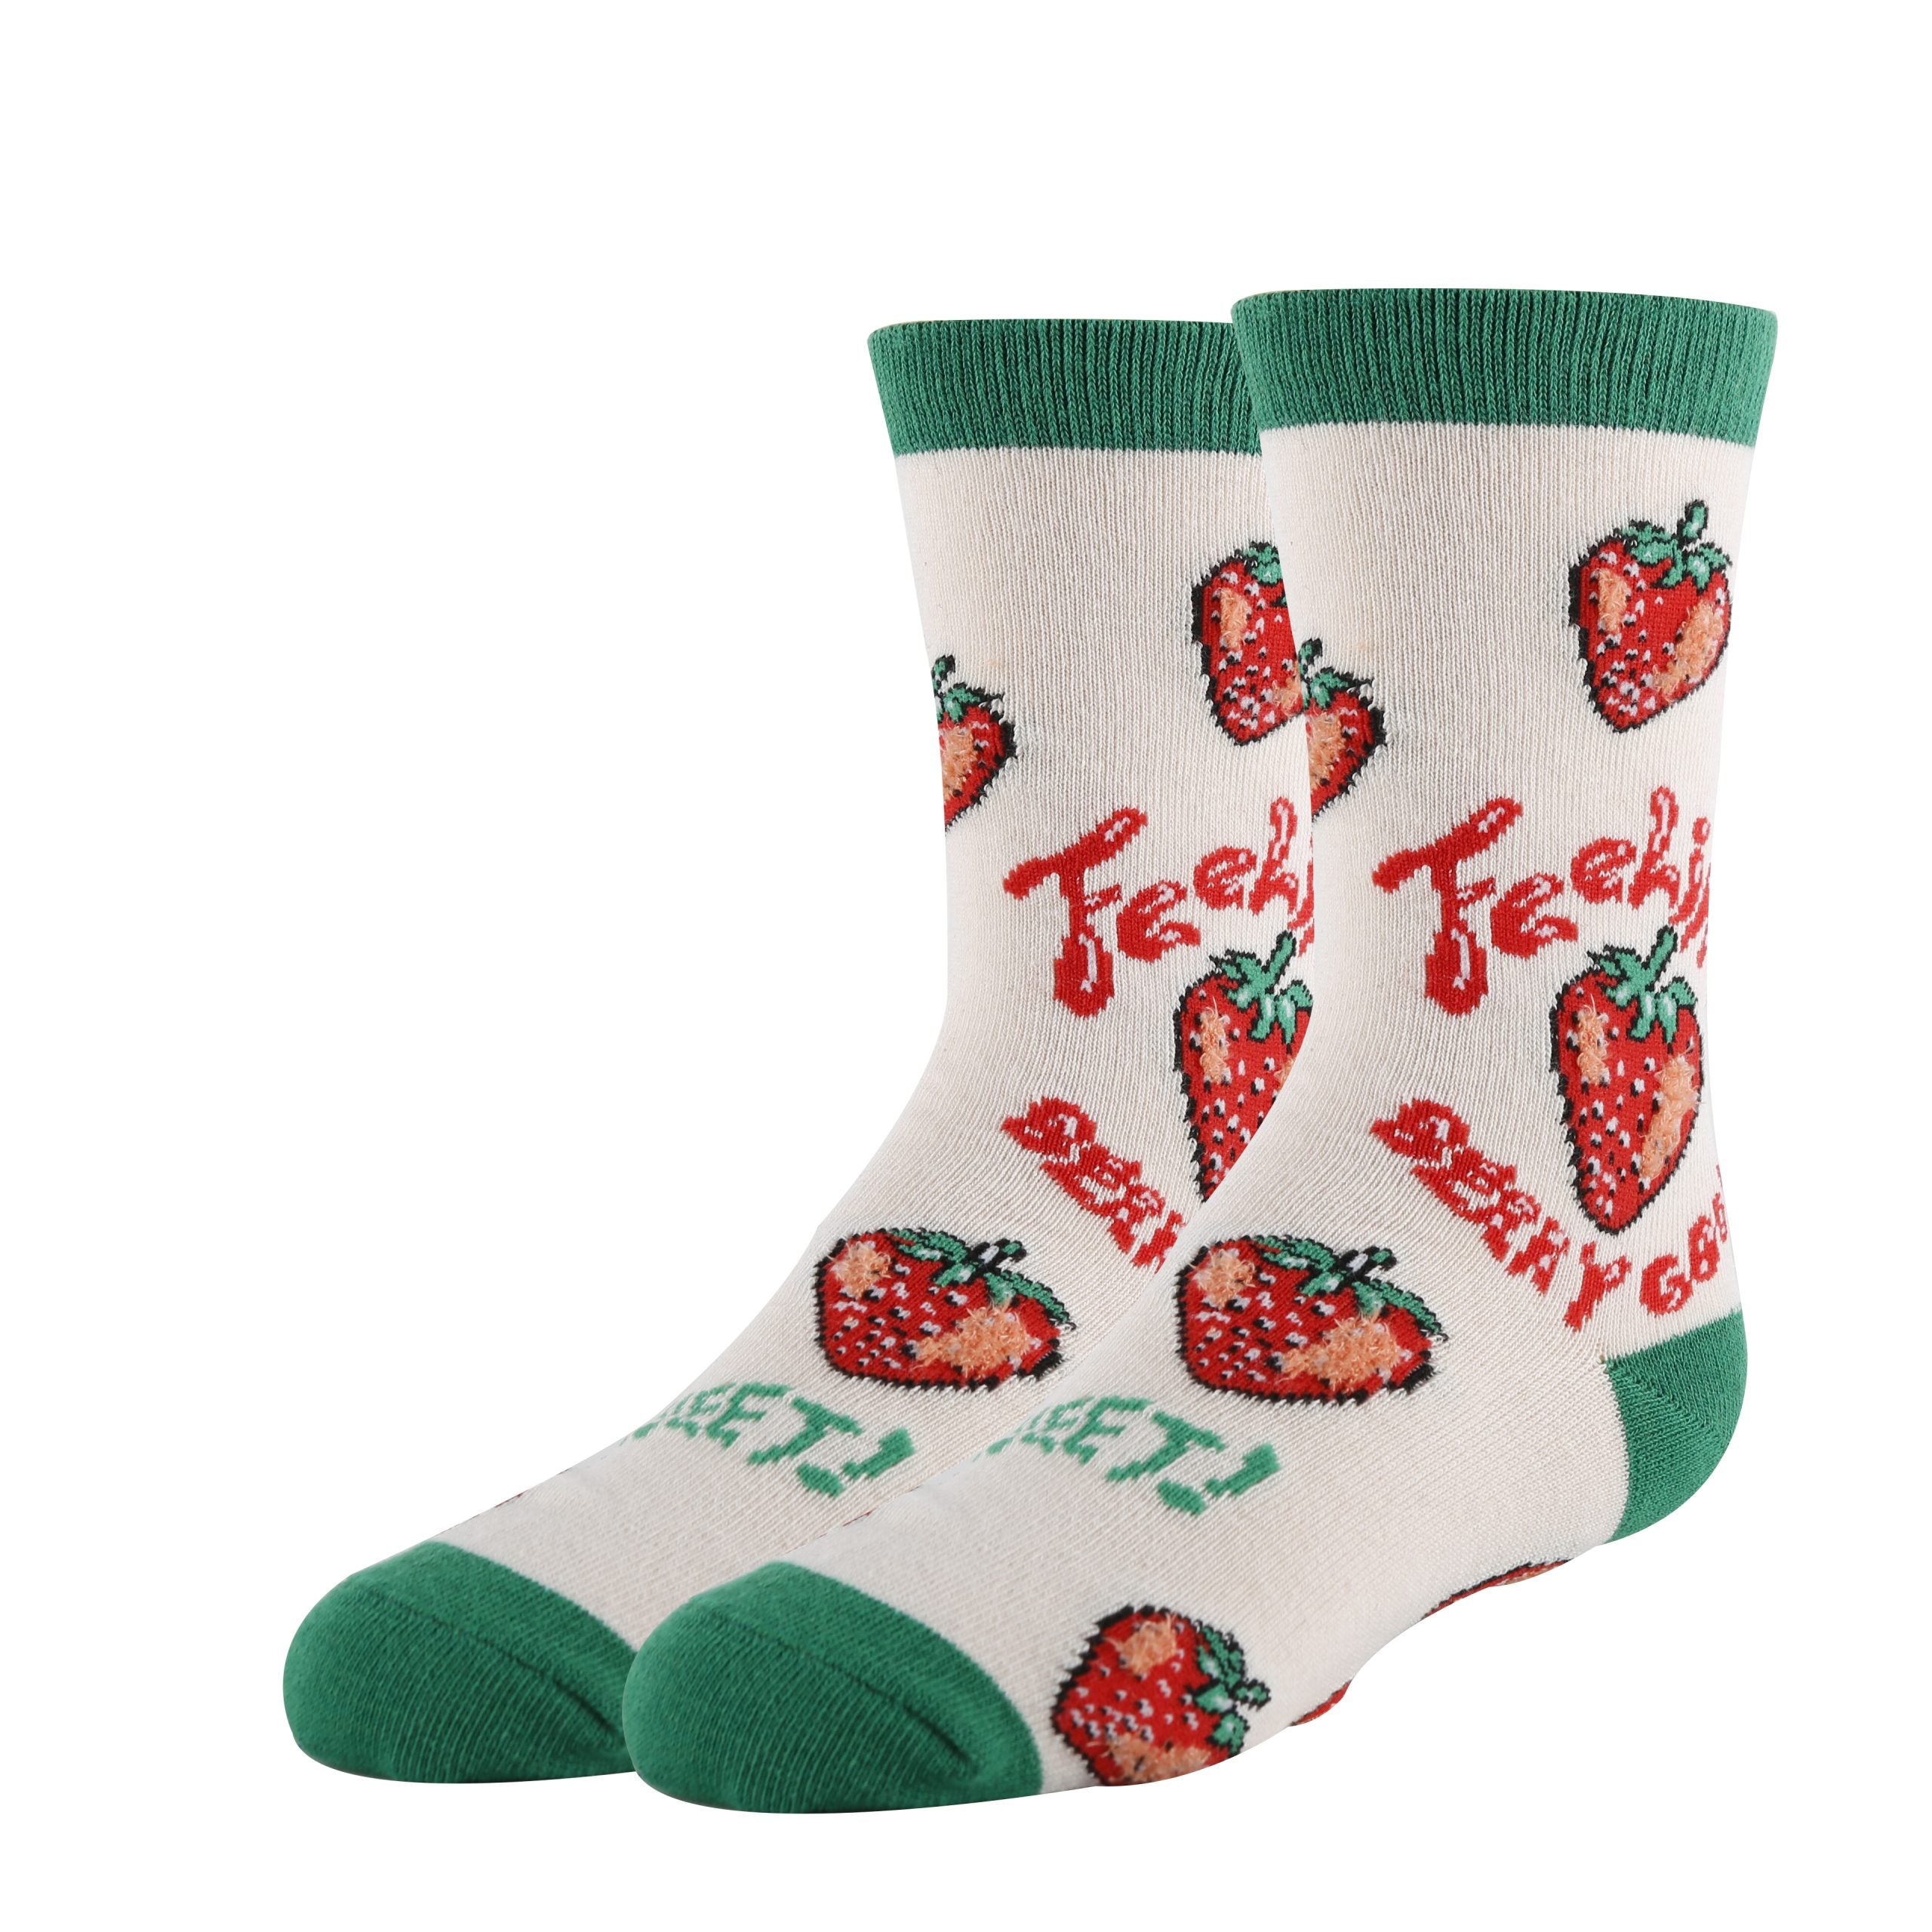 Berry Good Socks | Funny Crew Socks for Kids